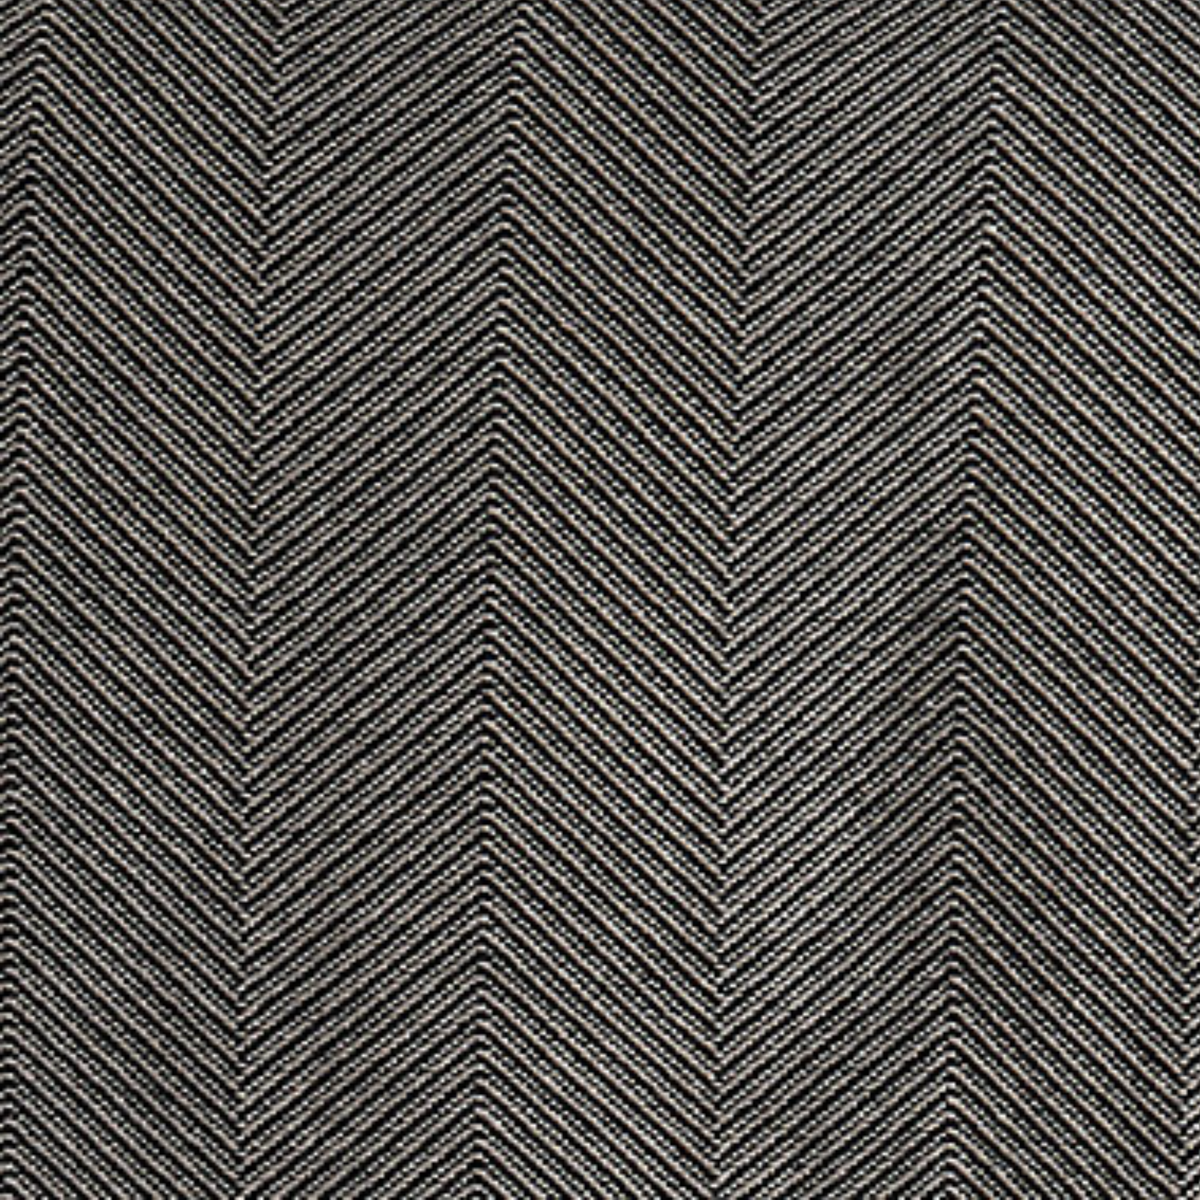 Swatch Sample of Pine Cone Hill Herringbone Blanket in Black/Ivory Color